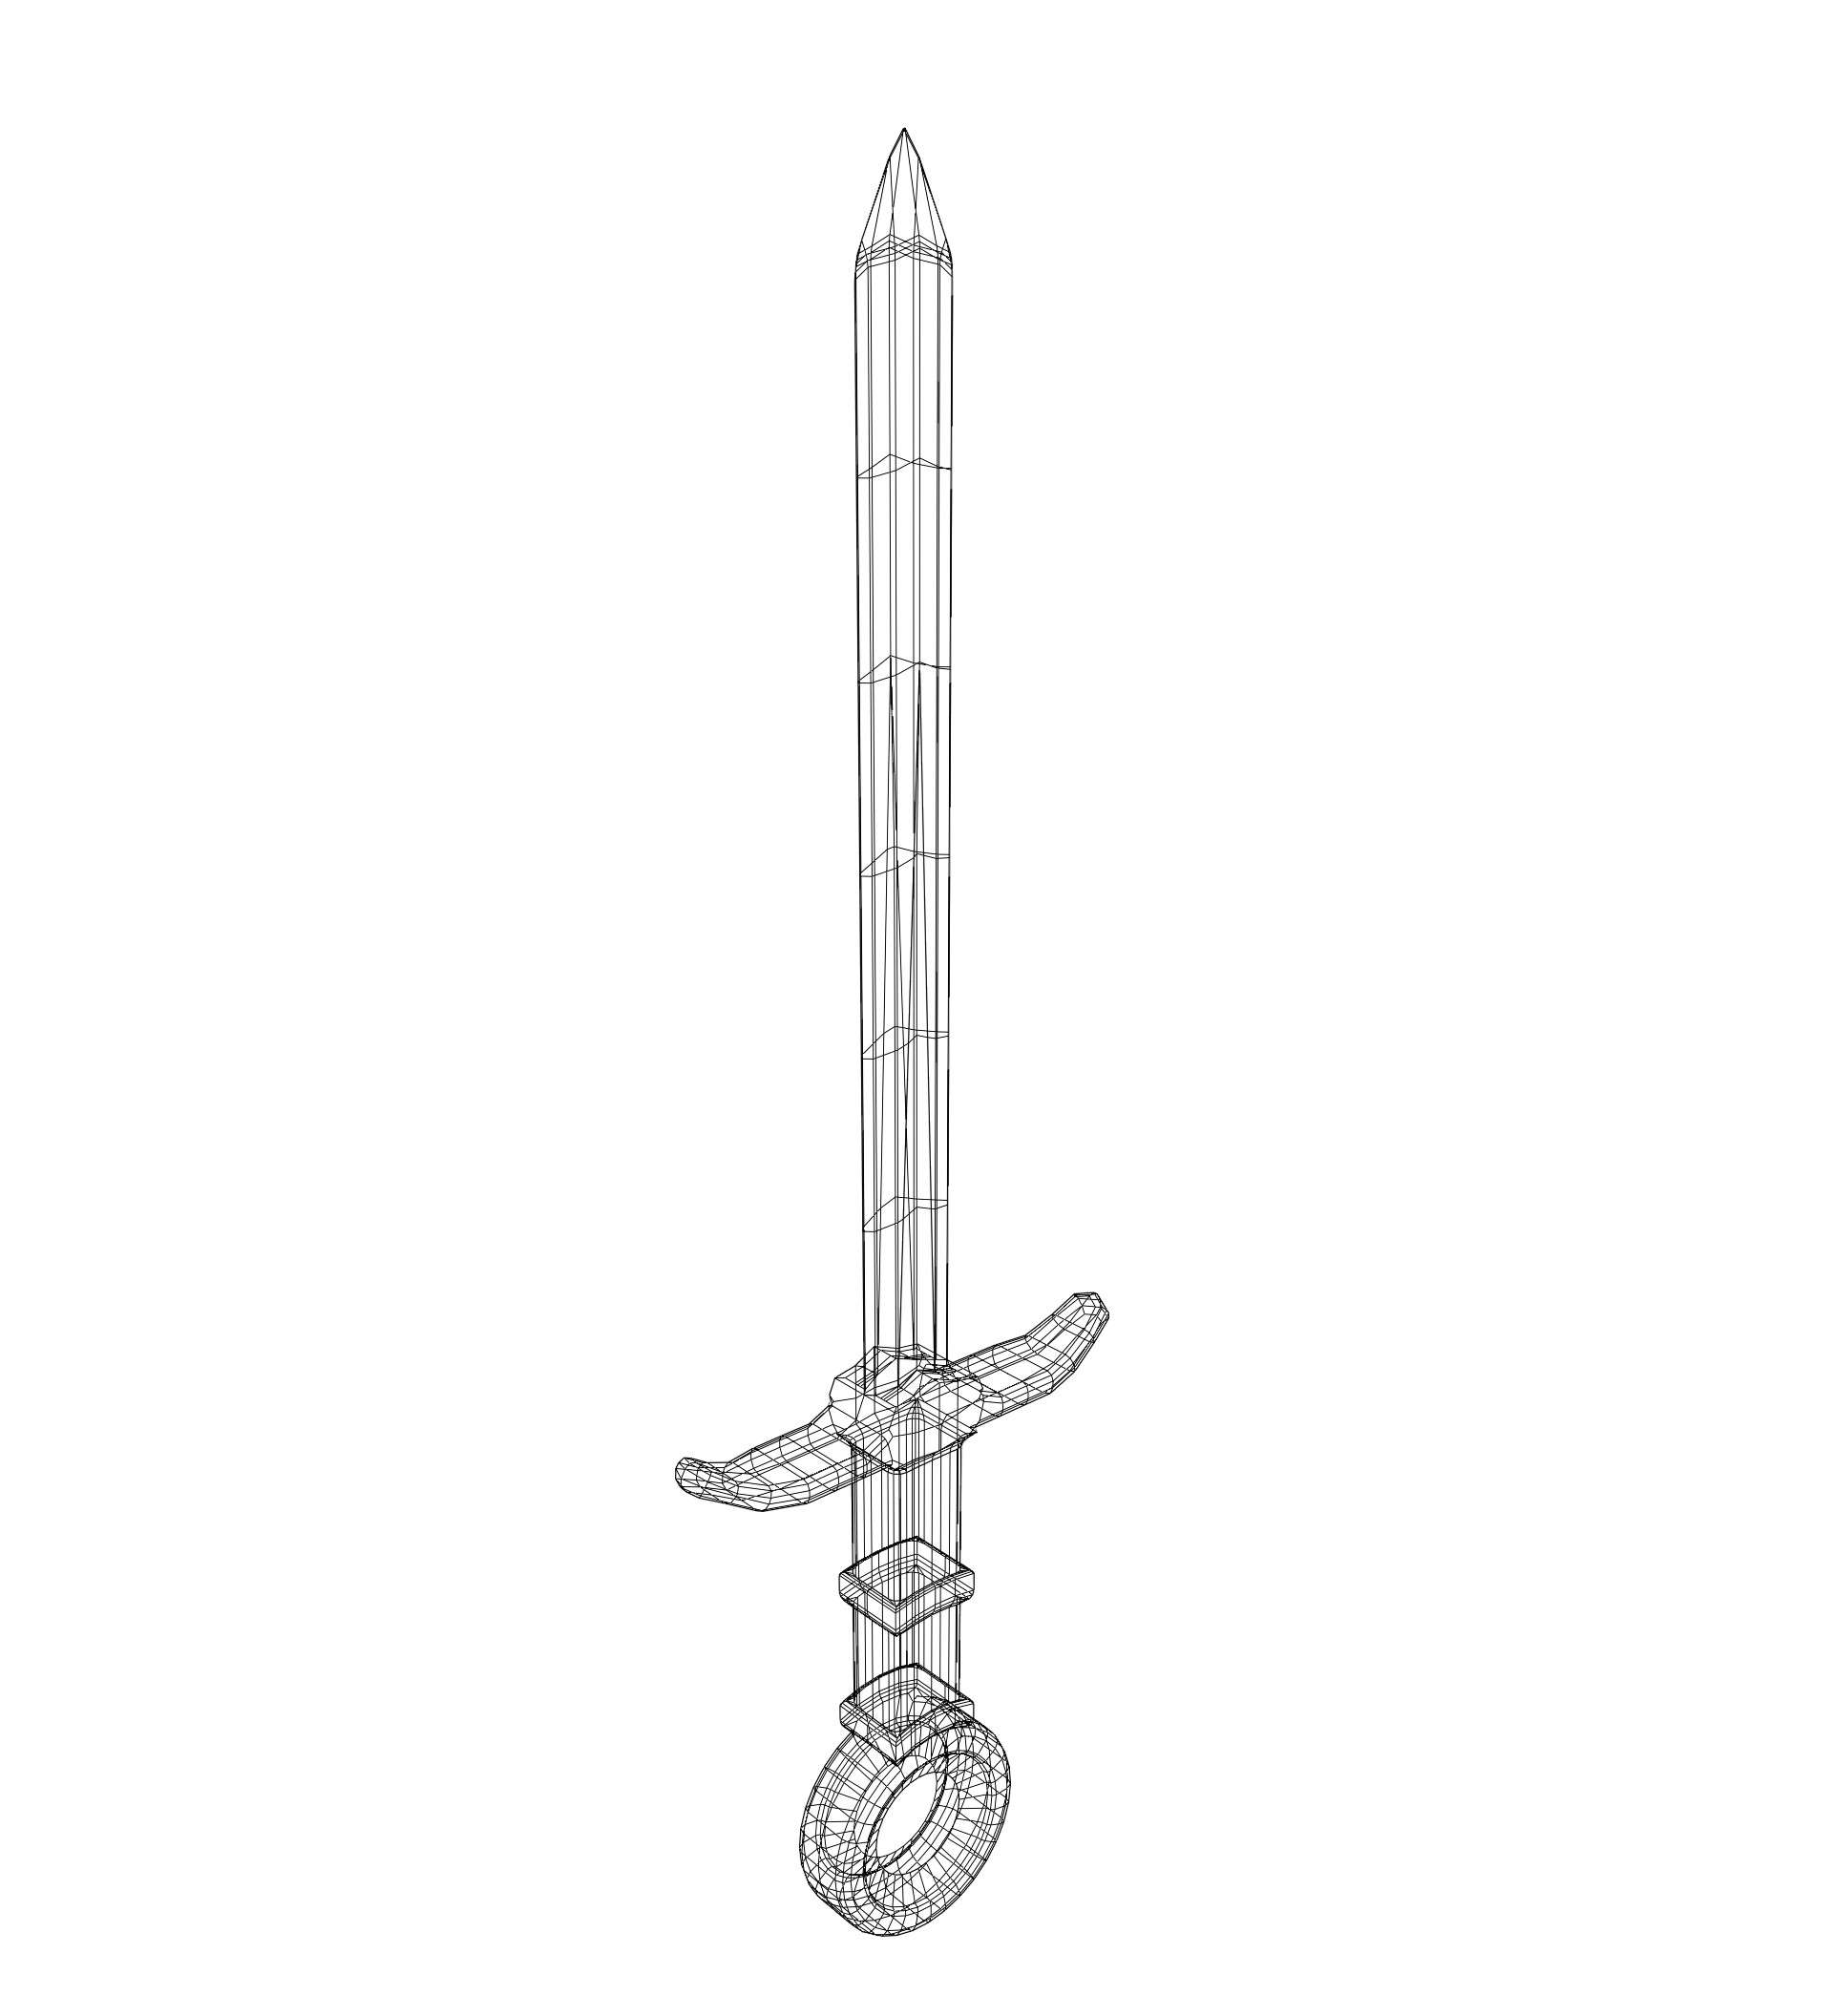 ArtStation - Medieval Cartoon Sword